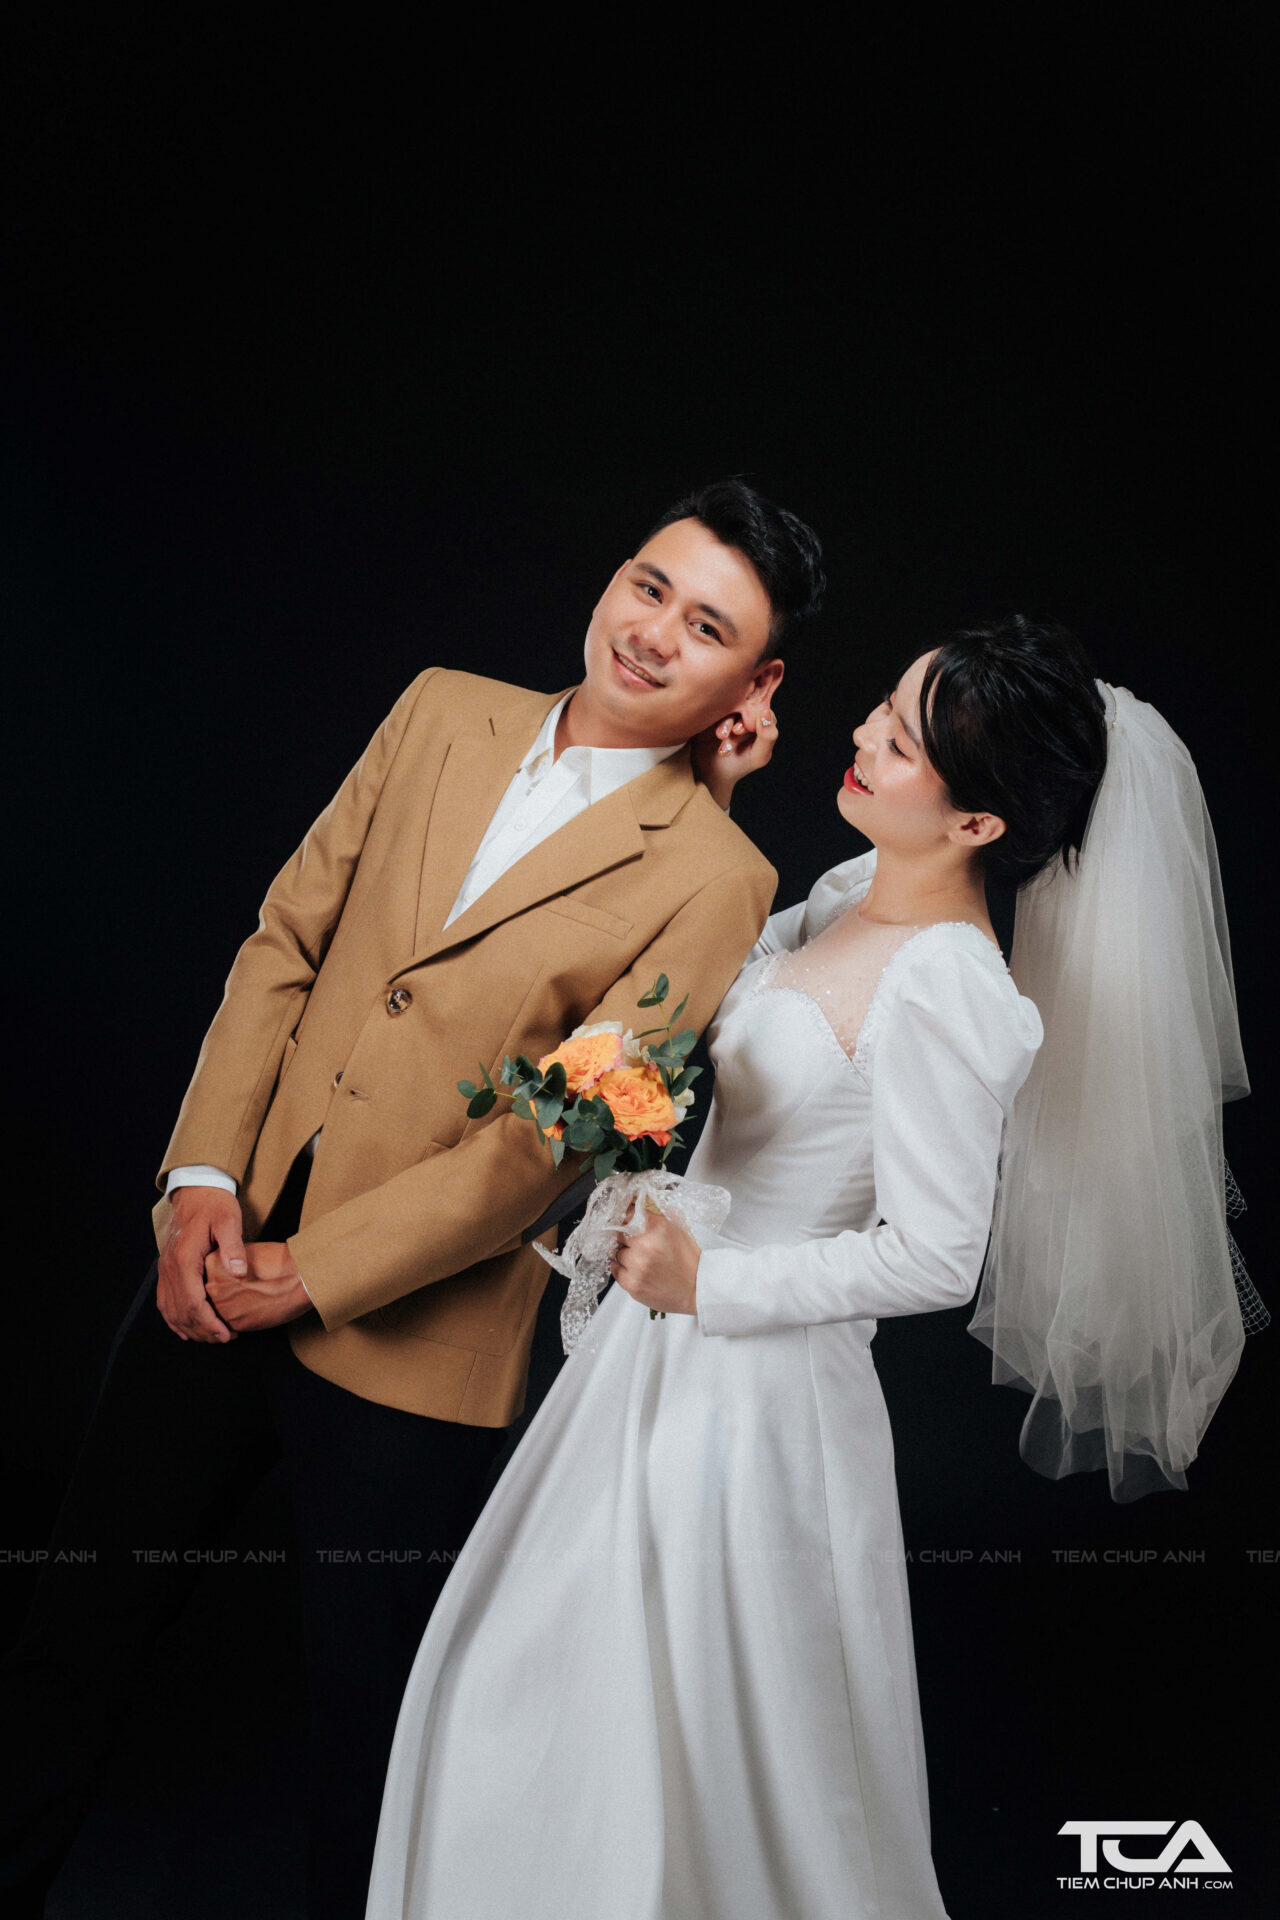 hình cưới chụp phong cách Hàn Quốc